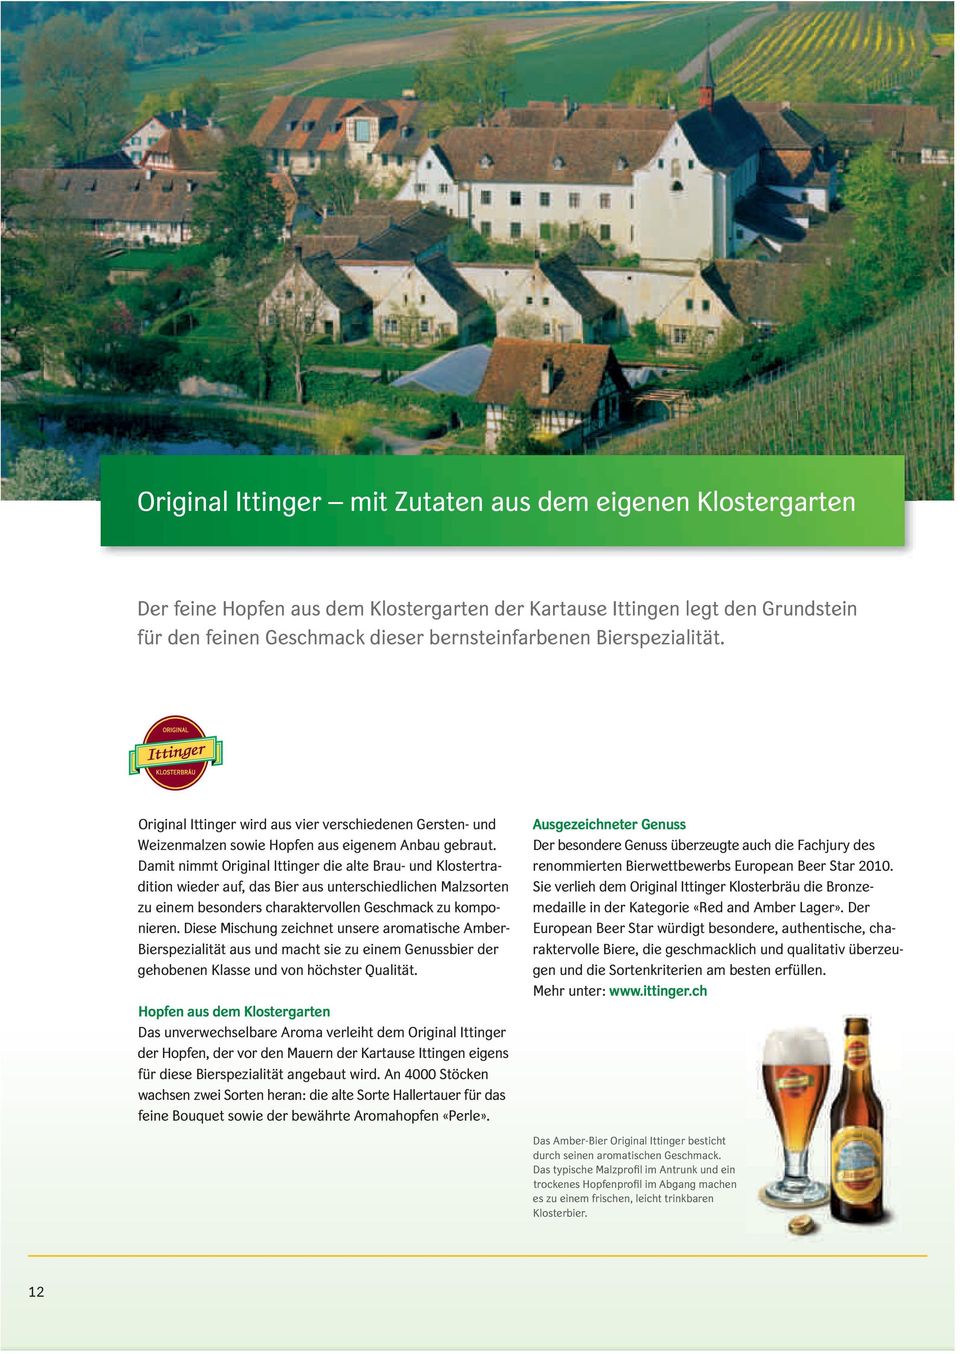 Damit nimmt Original Ittinger die alte Brau- und Klostertradition wieder auf, das Bier aus unterschiedlichen Malzsorten zu einem besonders charaktervollen Geschmack zu komponieren.